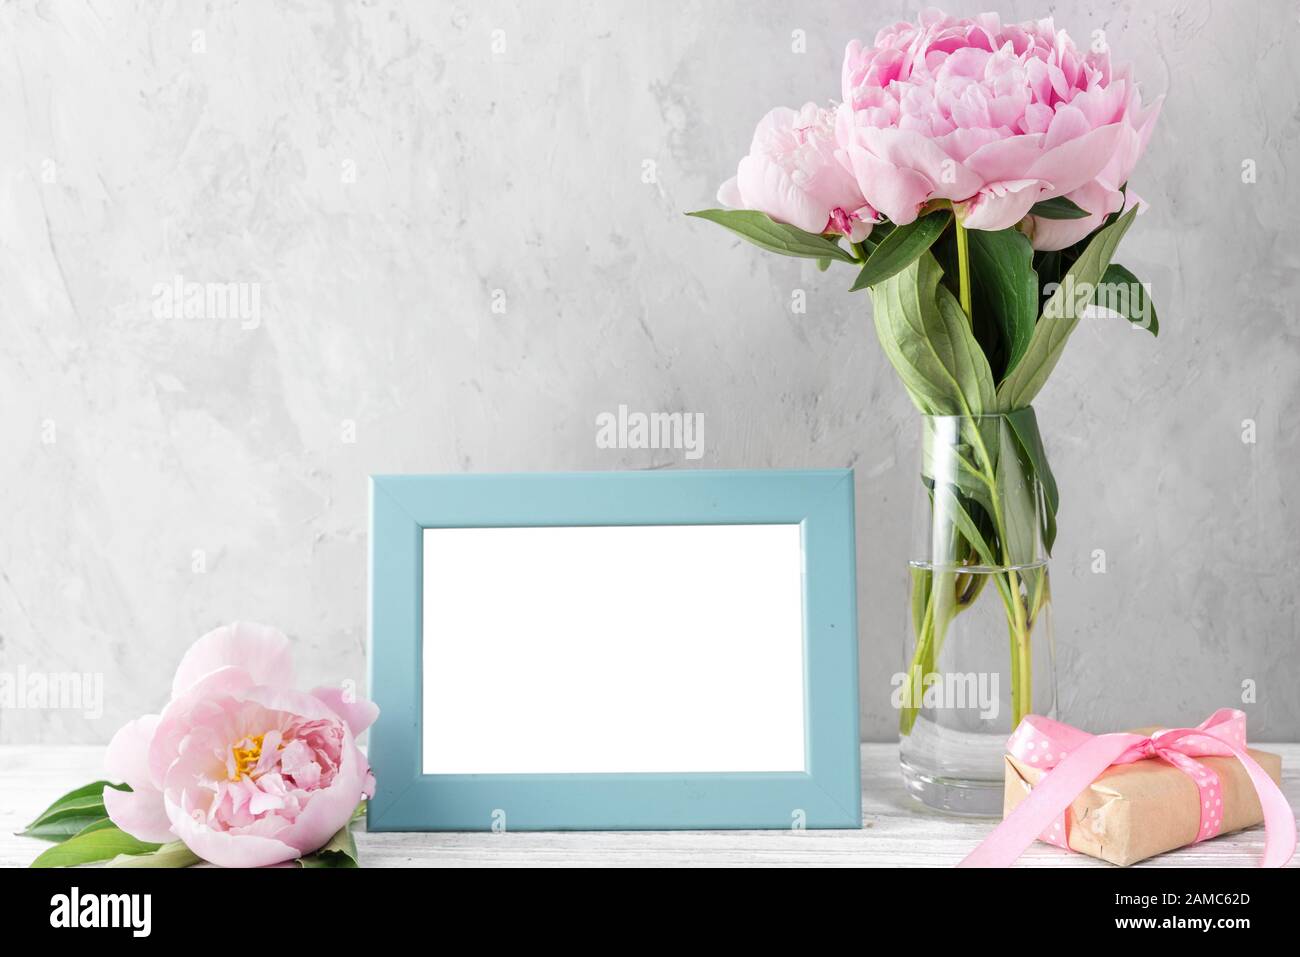 bouquet de fleurs roses pastel avec cadre photo vierge sur table blanche avec espace de copie. maquette. vie fixe. concept de jour ou de mariage pour femme. festif b Banque D'Images